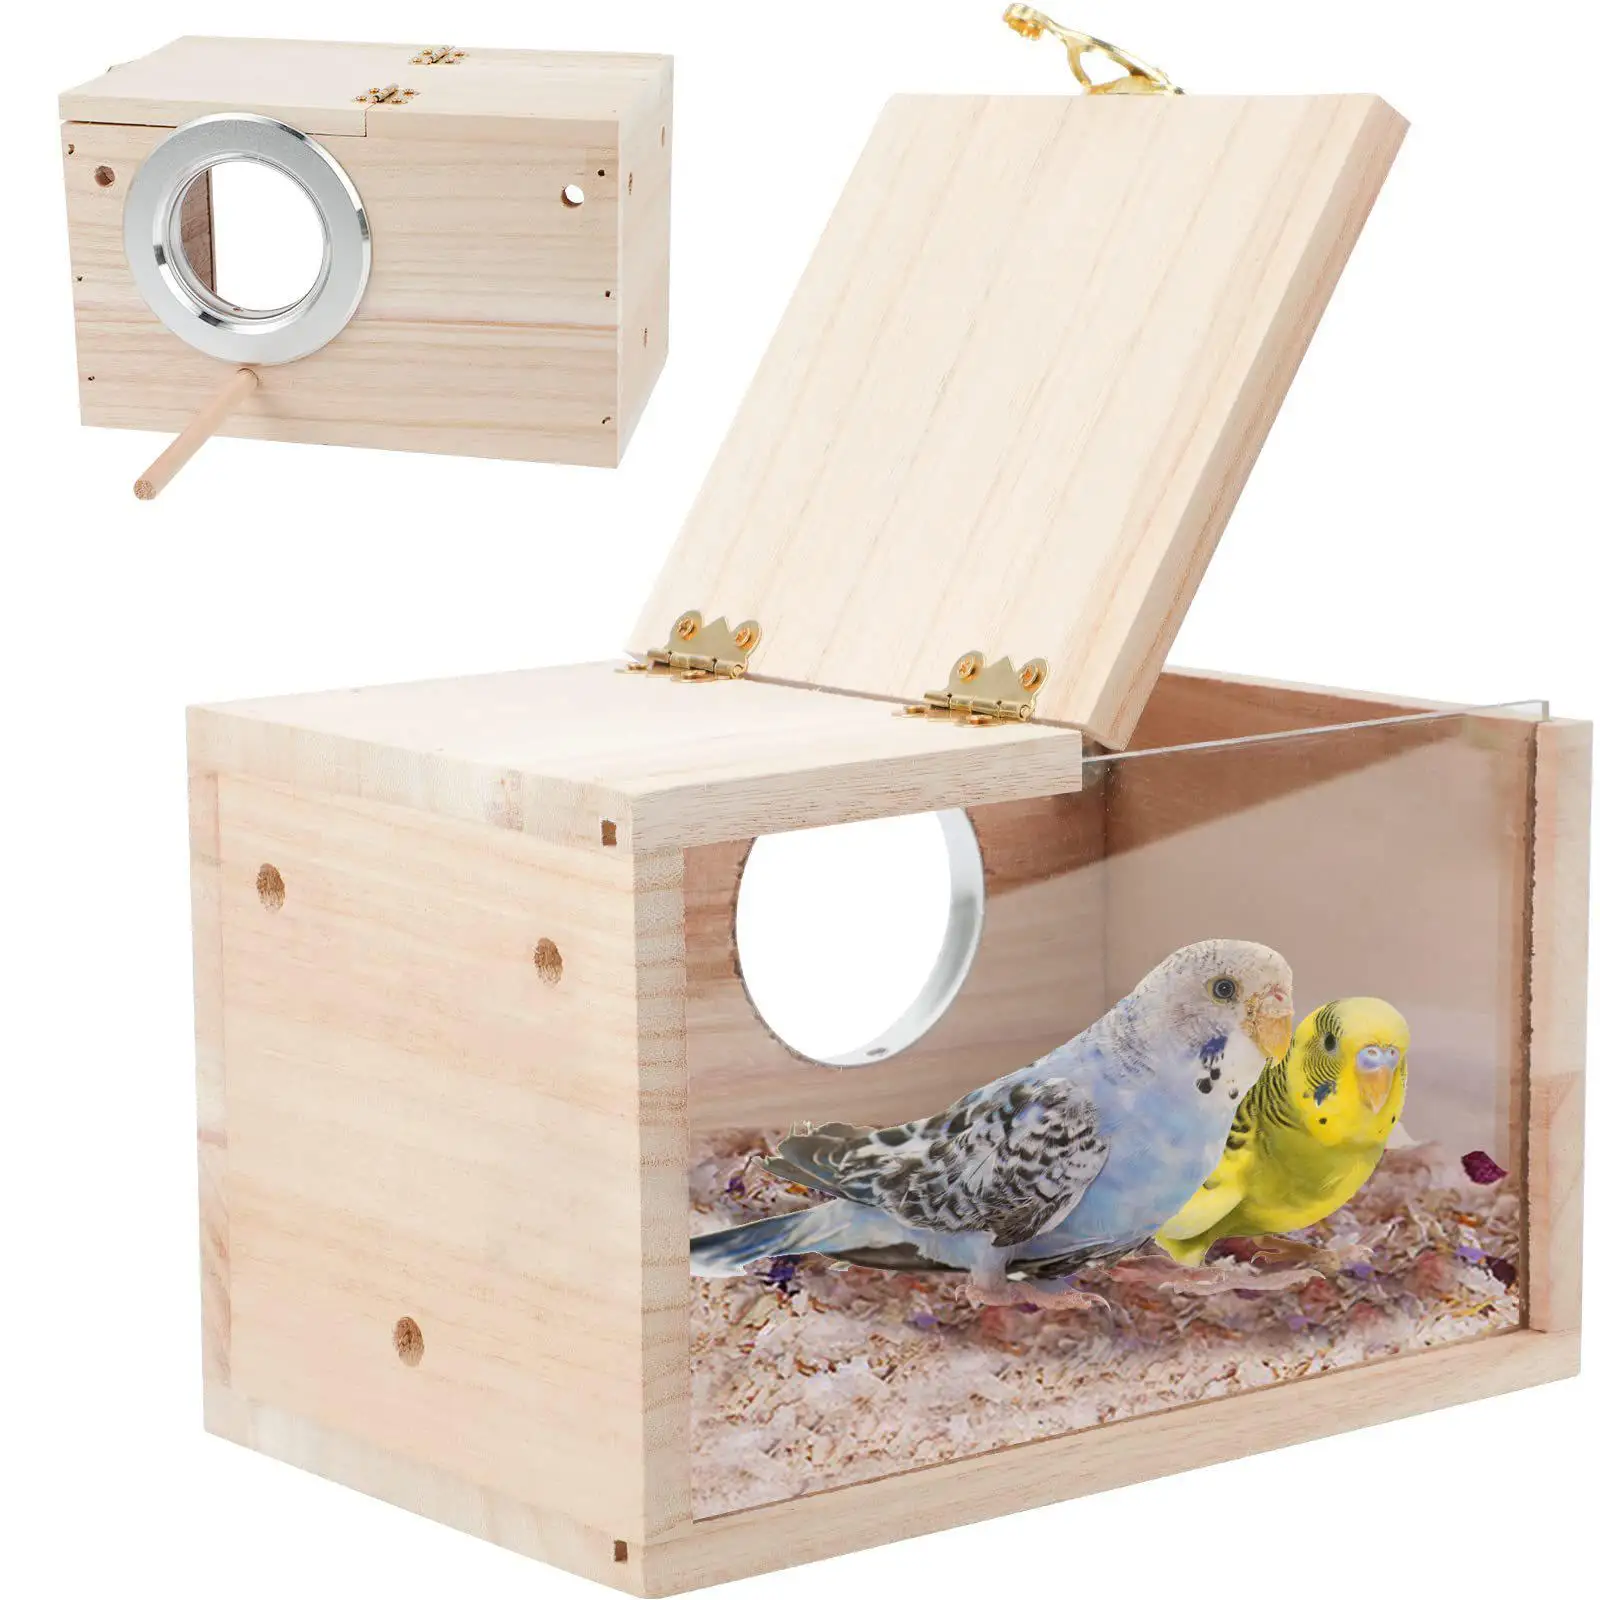 Ответы slep-kostroma.ru: можно ли сделать гнездо из коробки для попугая кореллы?